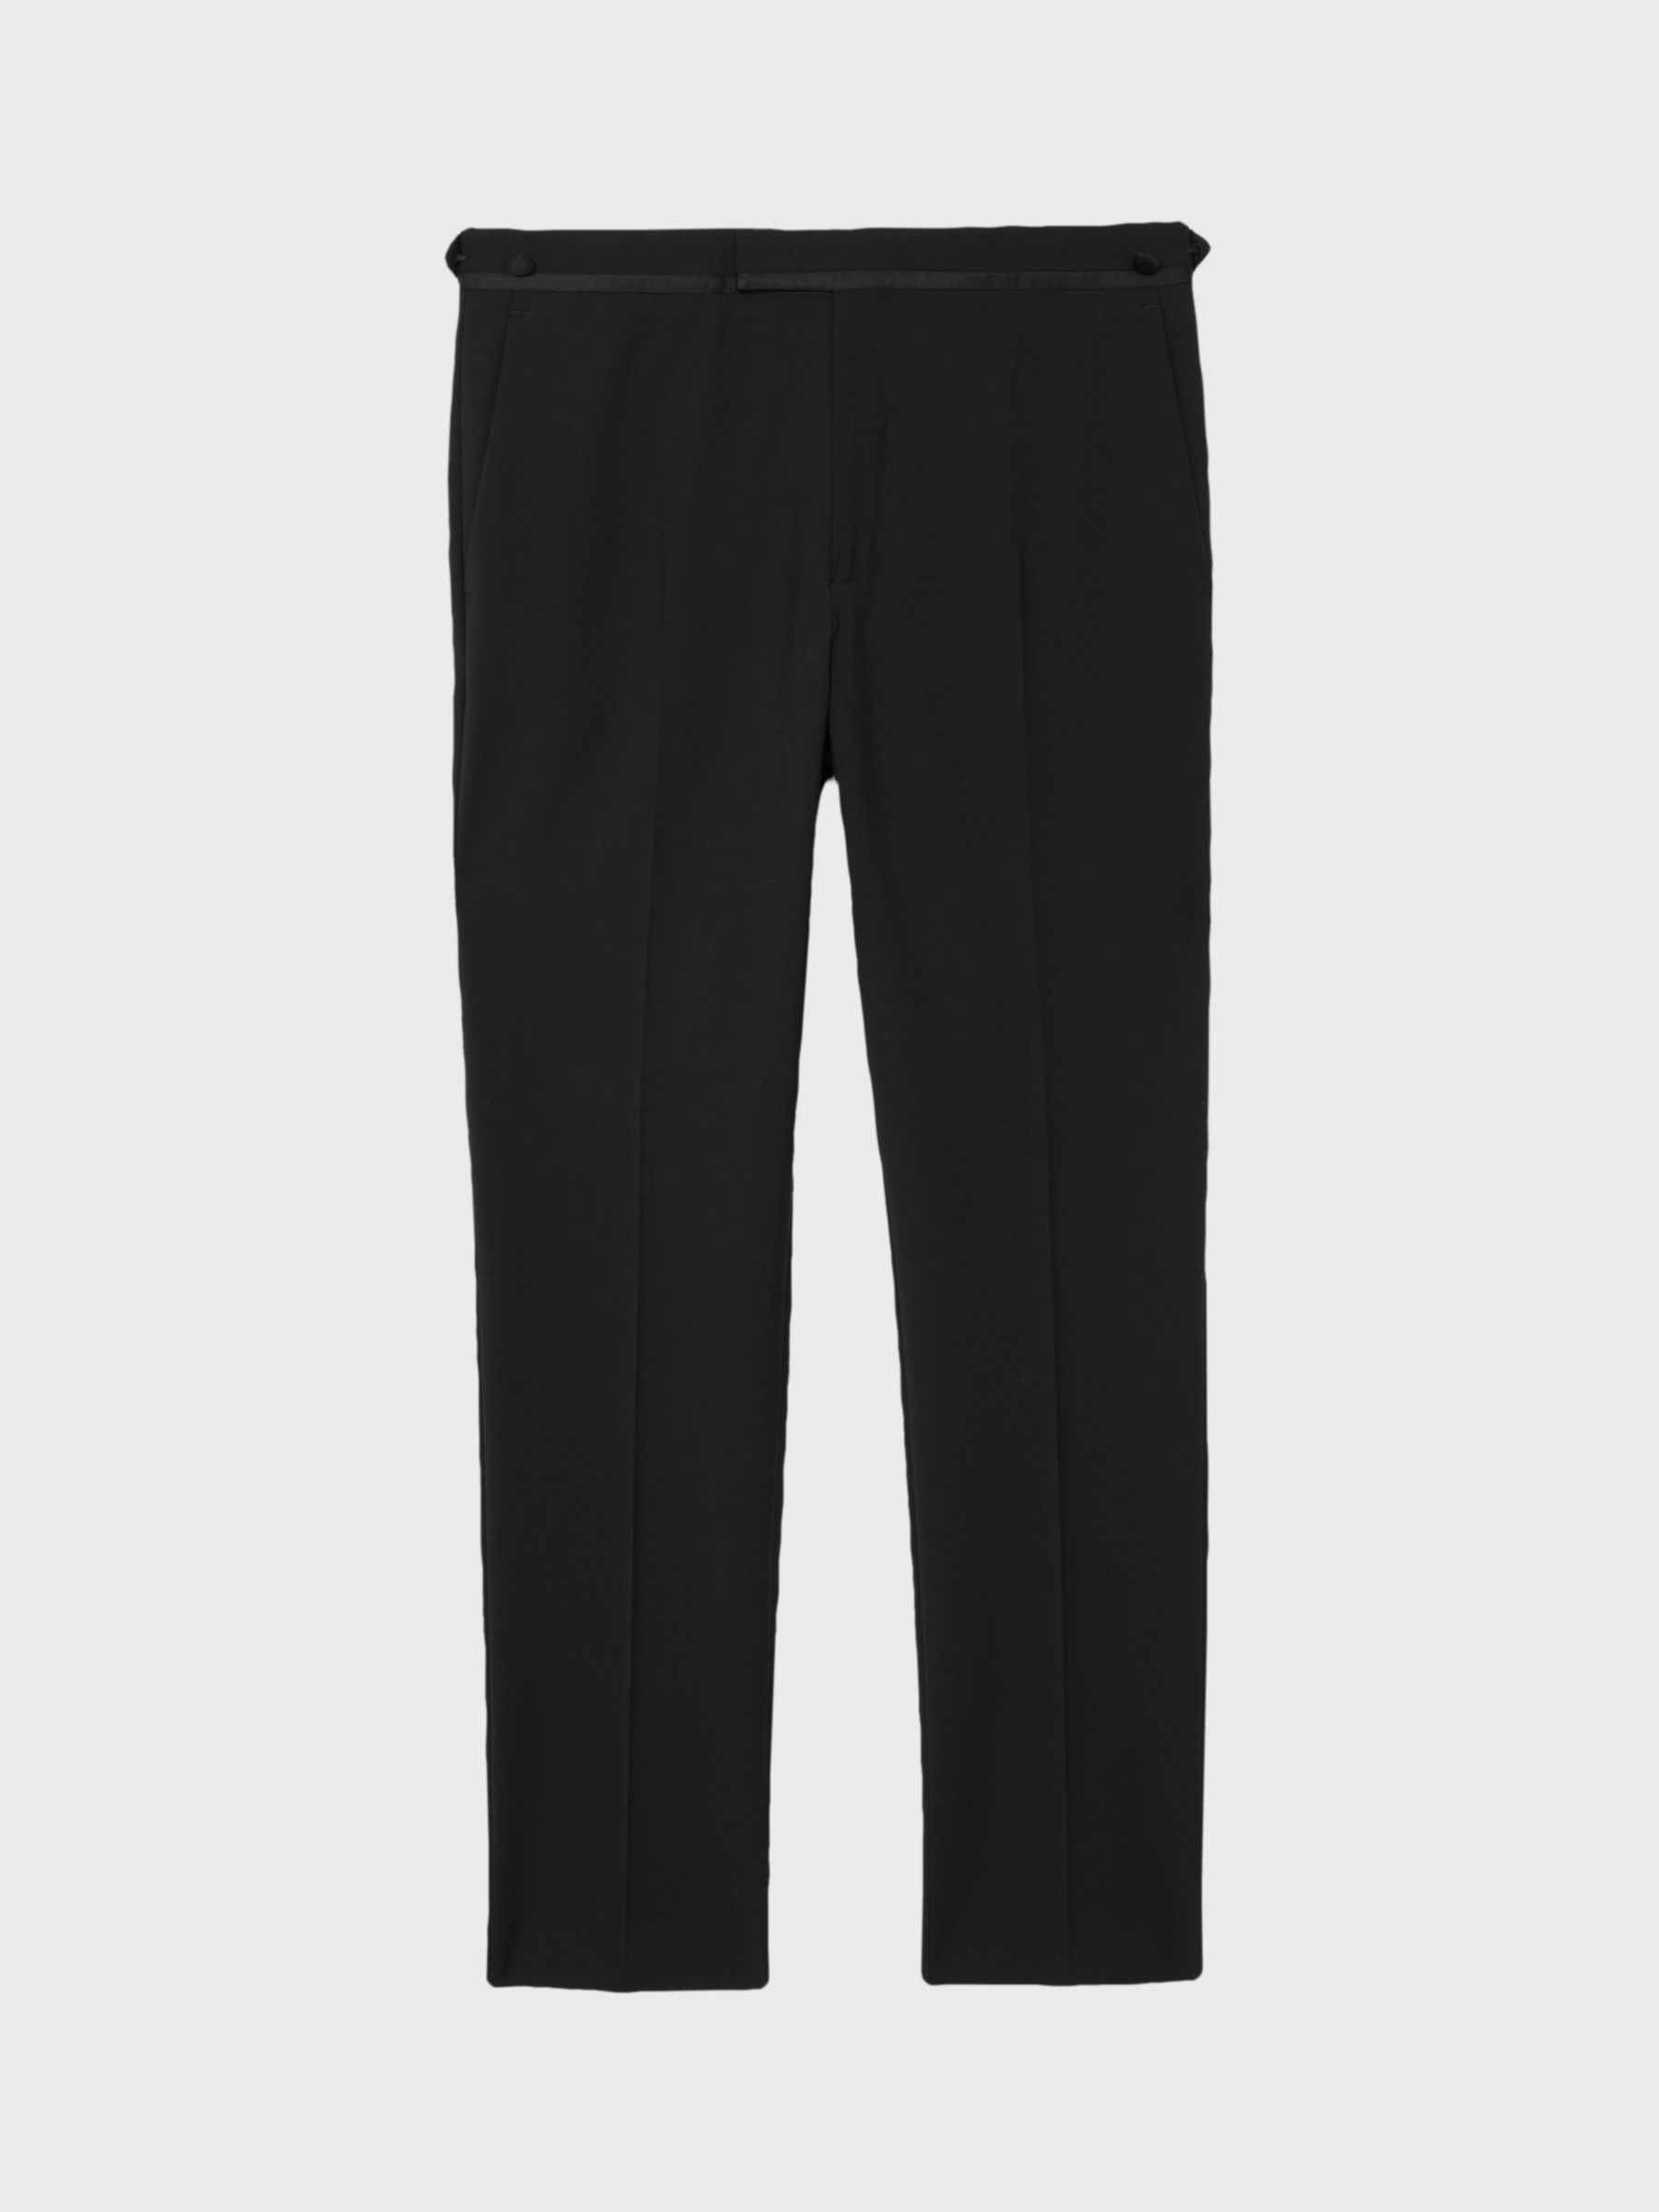 Reiss Poker Wool Blend Suit Trousers, Black, 36R